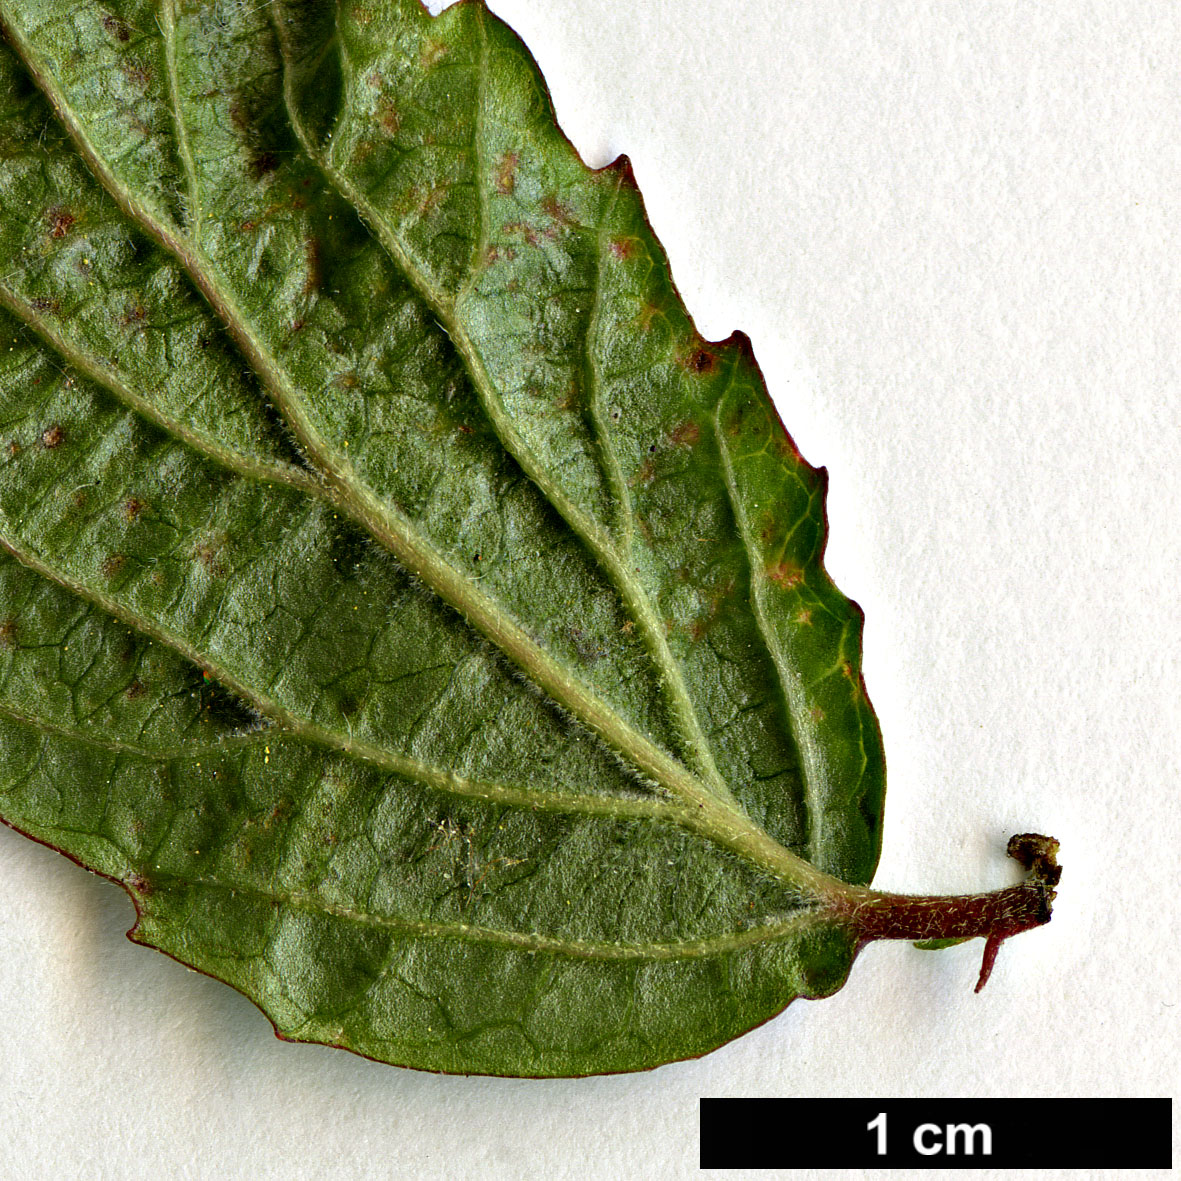 High resolution image: Family: Adoxaceae - Genus: Viburnum - Taxon: erosum